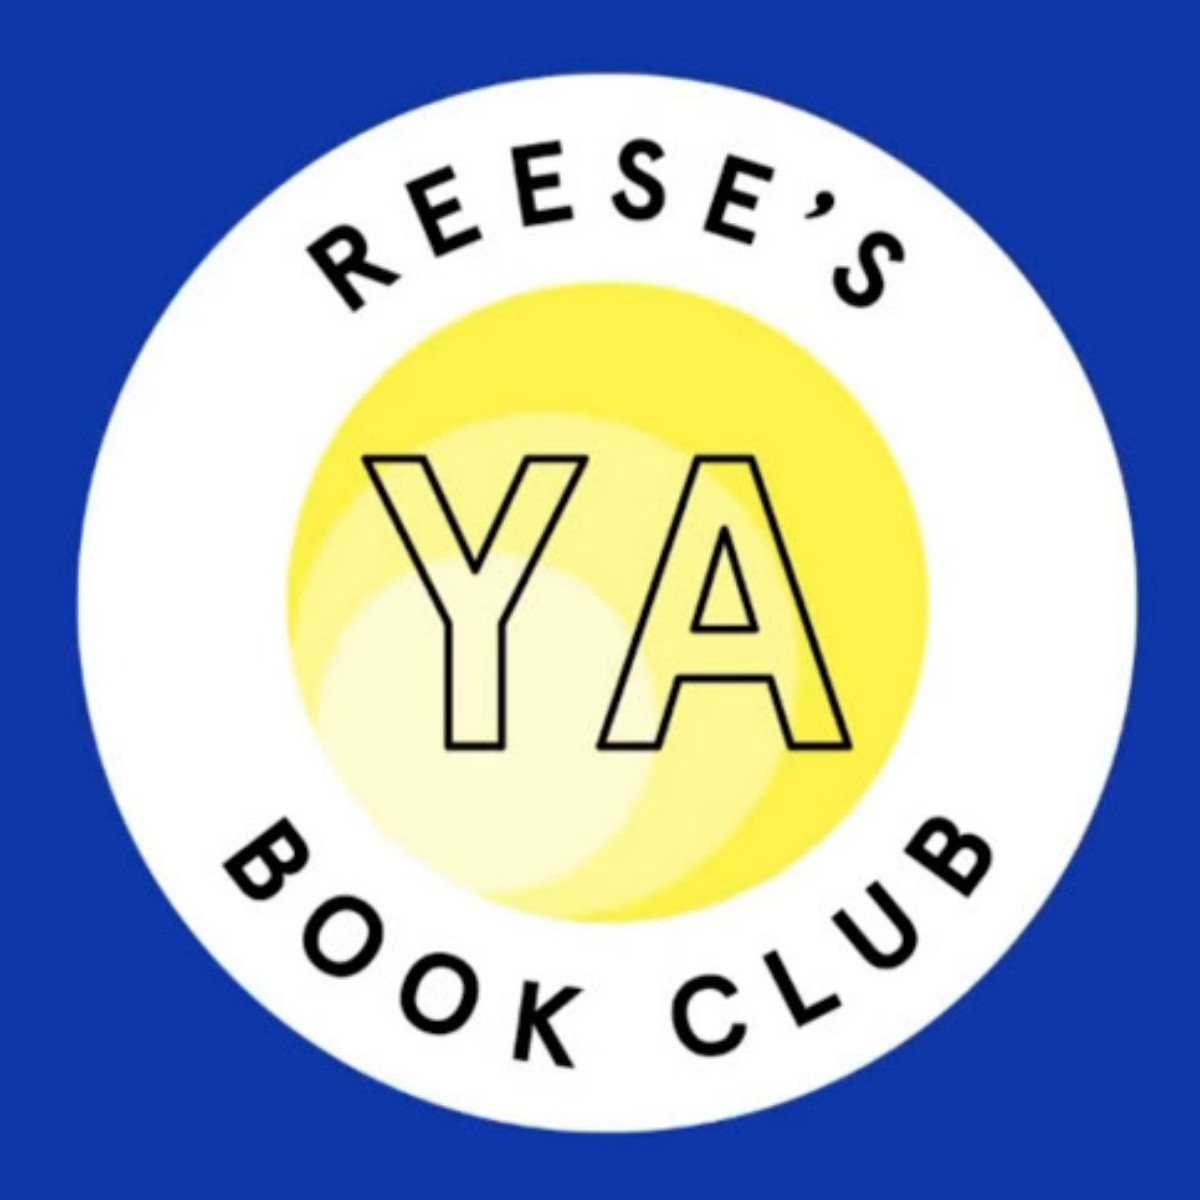 Reese’s YA Book Club Books: Full List